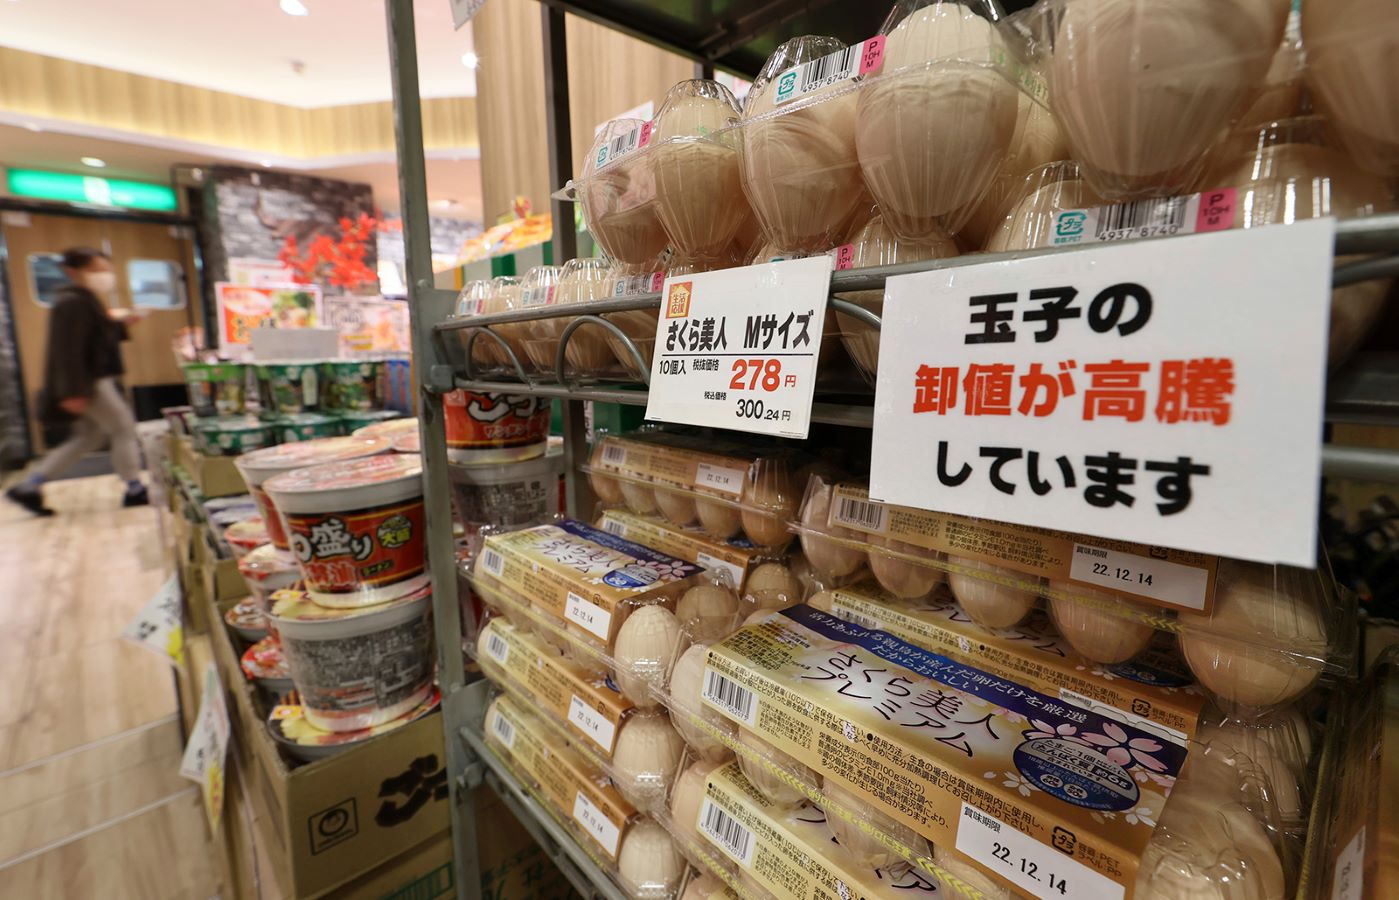 ارتفاع قياسي لأسعار البيض في اليابان